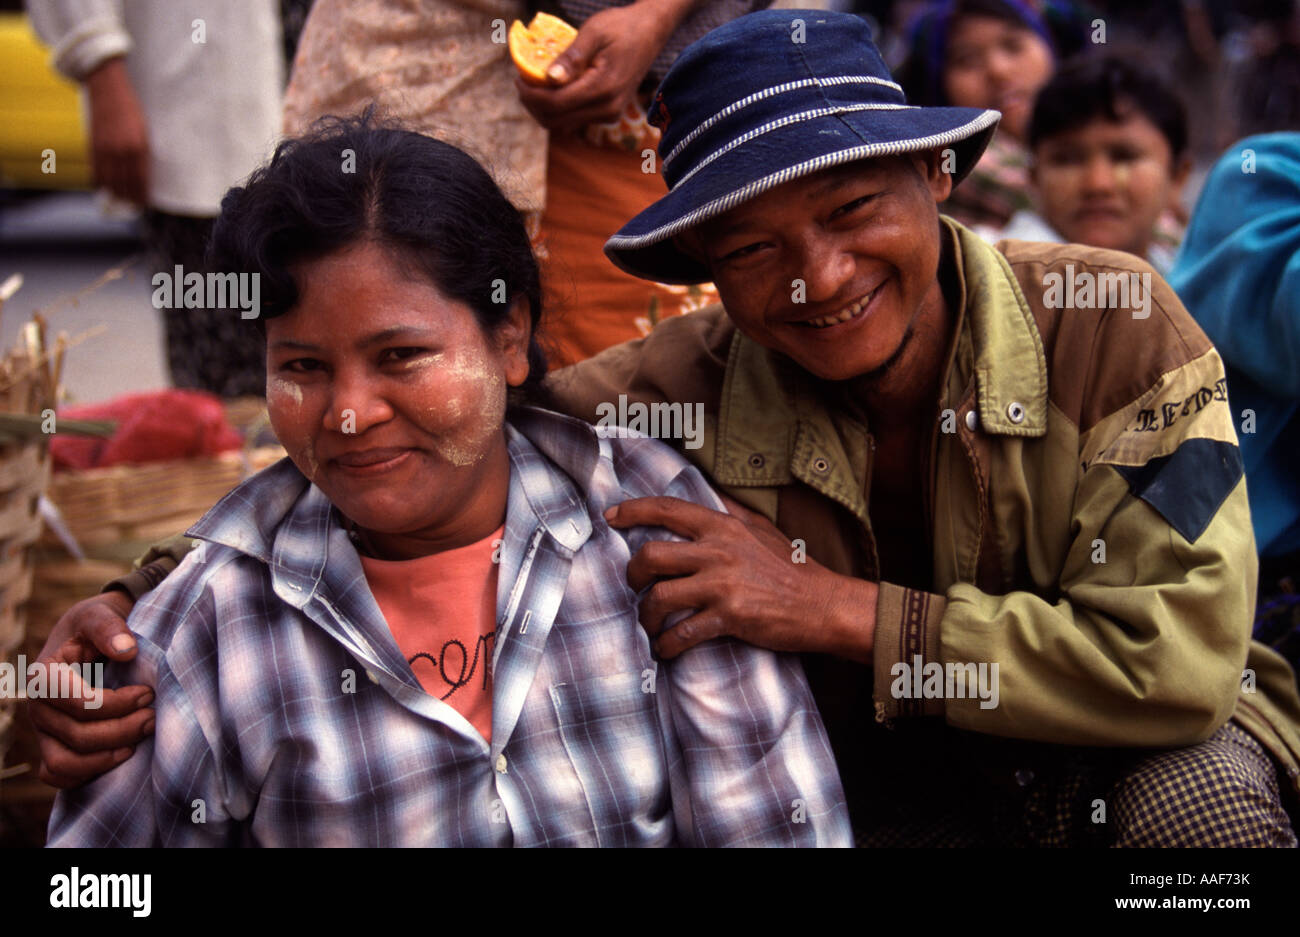 Zwei Personen auf einem Markt, Lächeln, nachdem sie gebeten, fotografiert zu werden Stockfoto